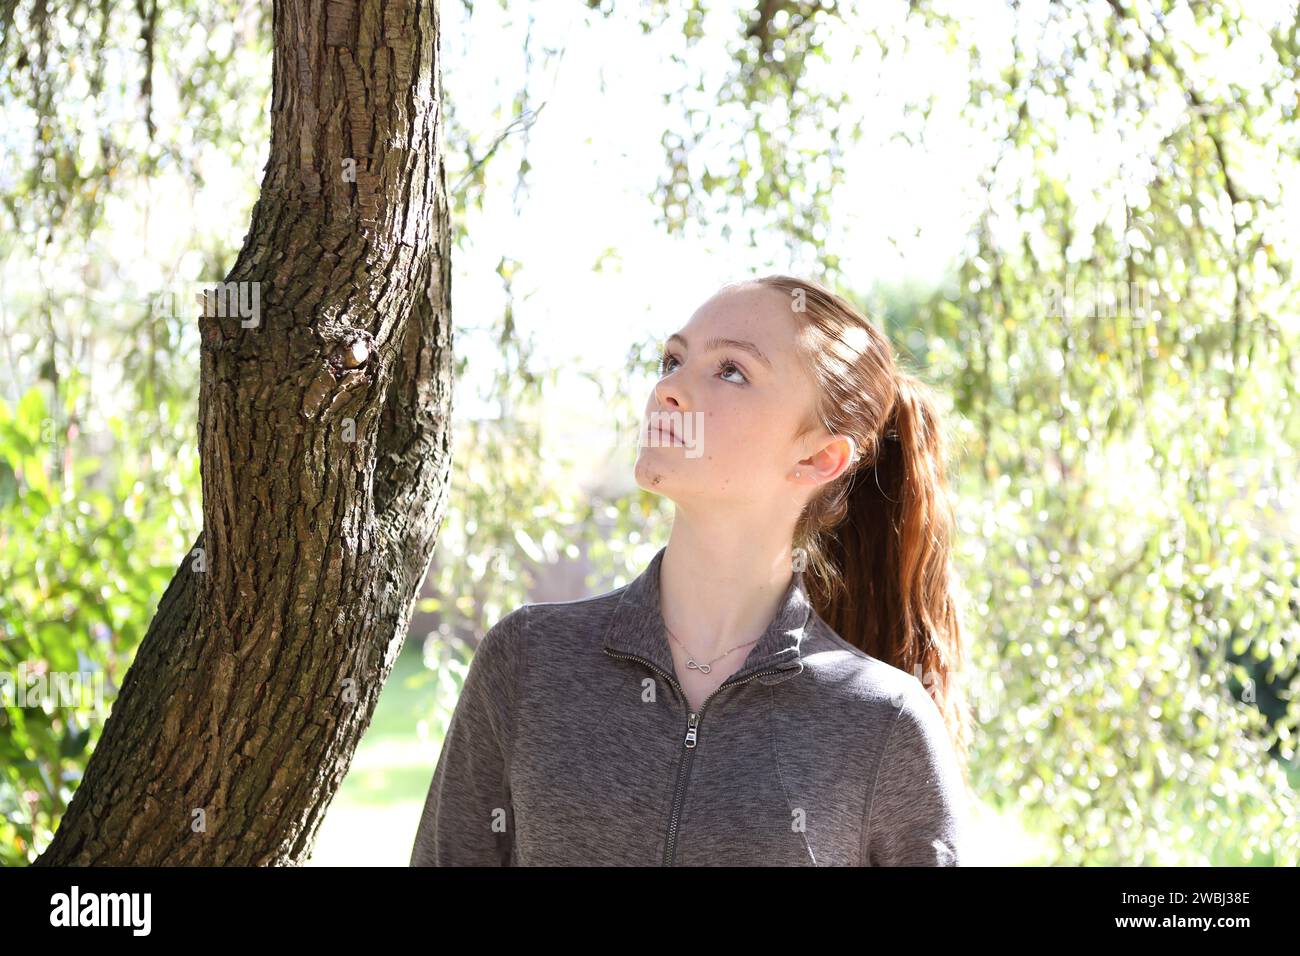 Adolescente regardant vers le haut portant le dessus gris sous les feuilles vertes de l'arbre, le soleil et le tronc de l'arbre regardant calme et réfléchi Banque D'Images